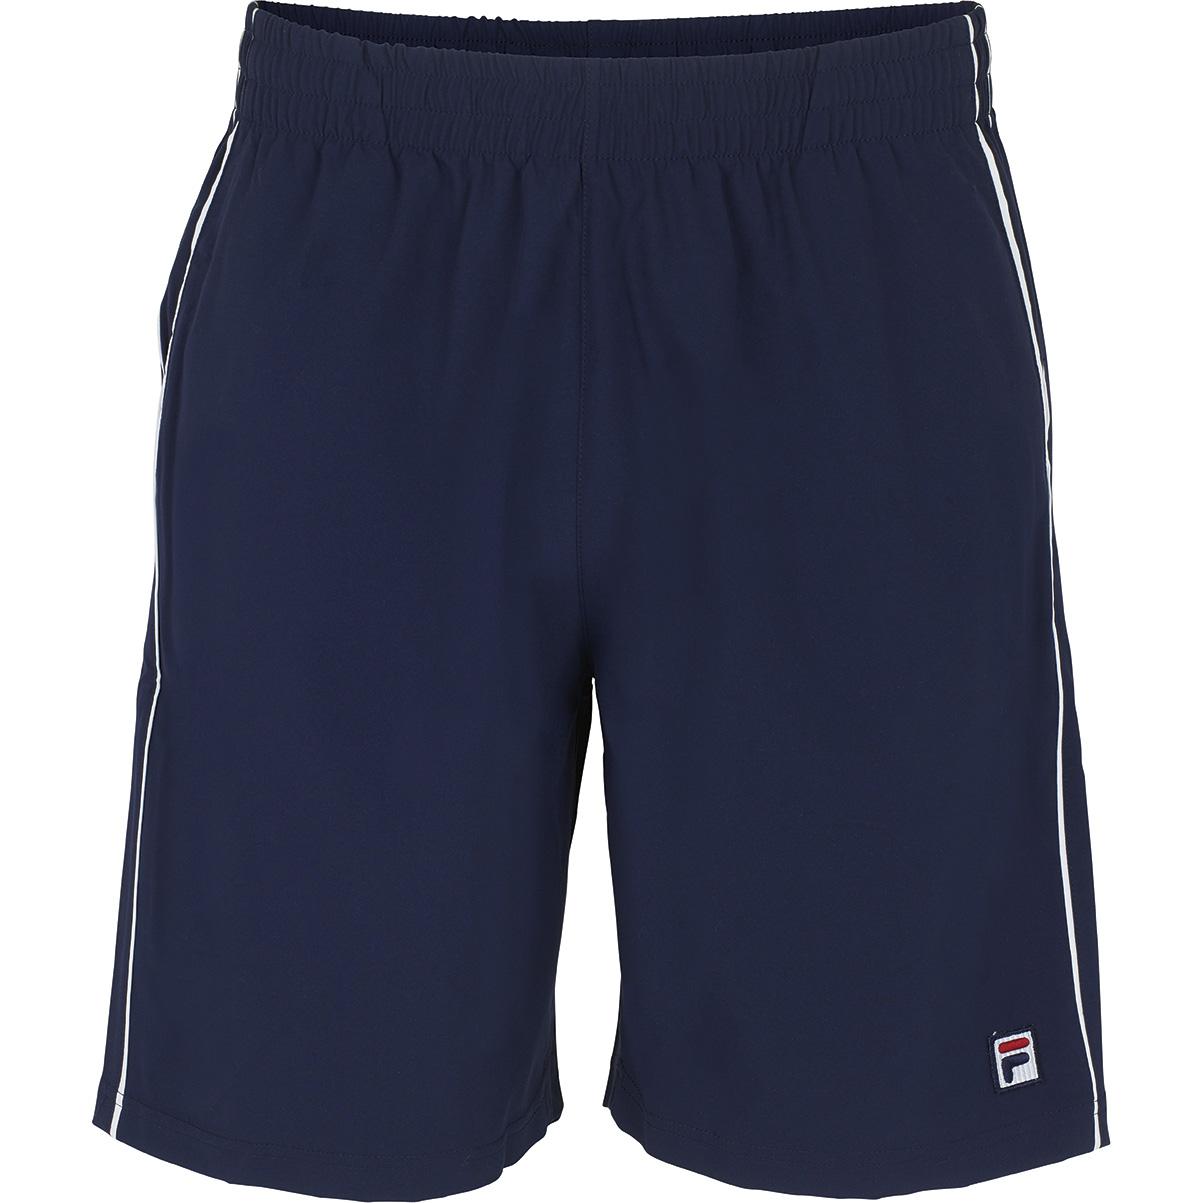 Fila Mens Heritage Tennis Shorts - Navy - Tennisnuts.com